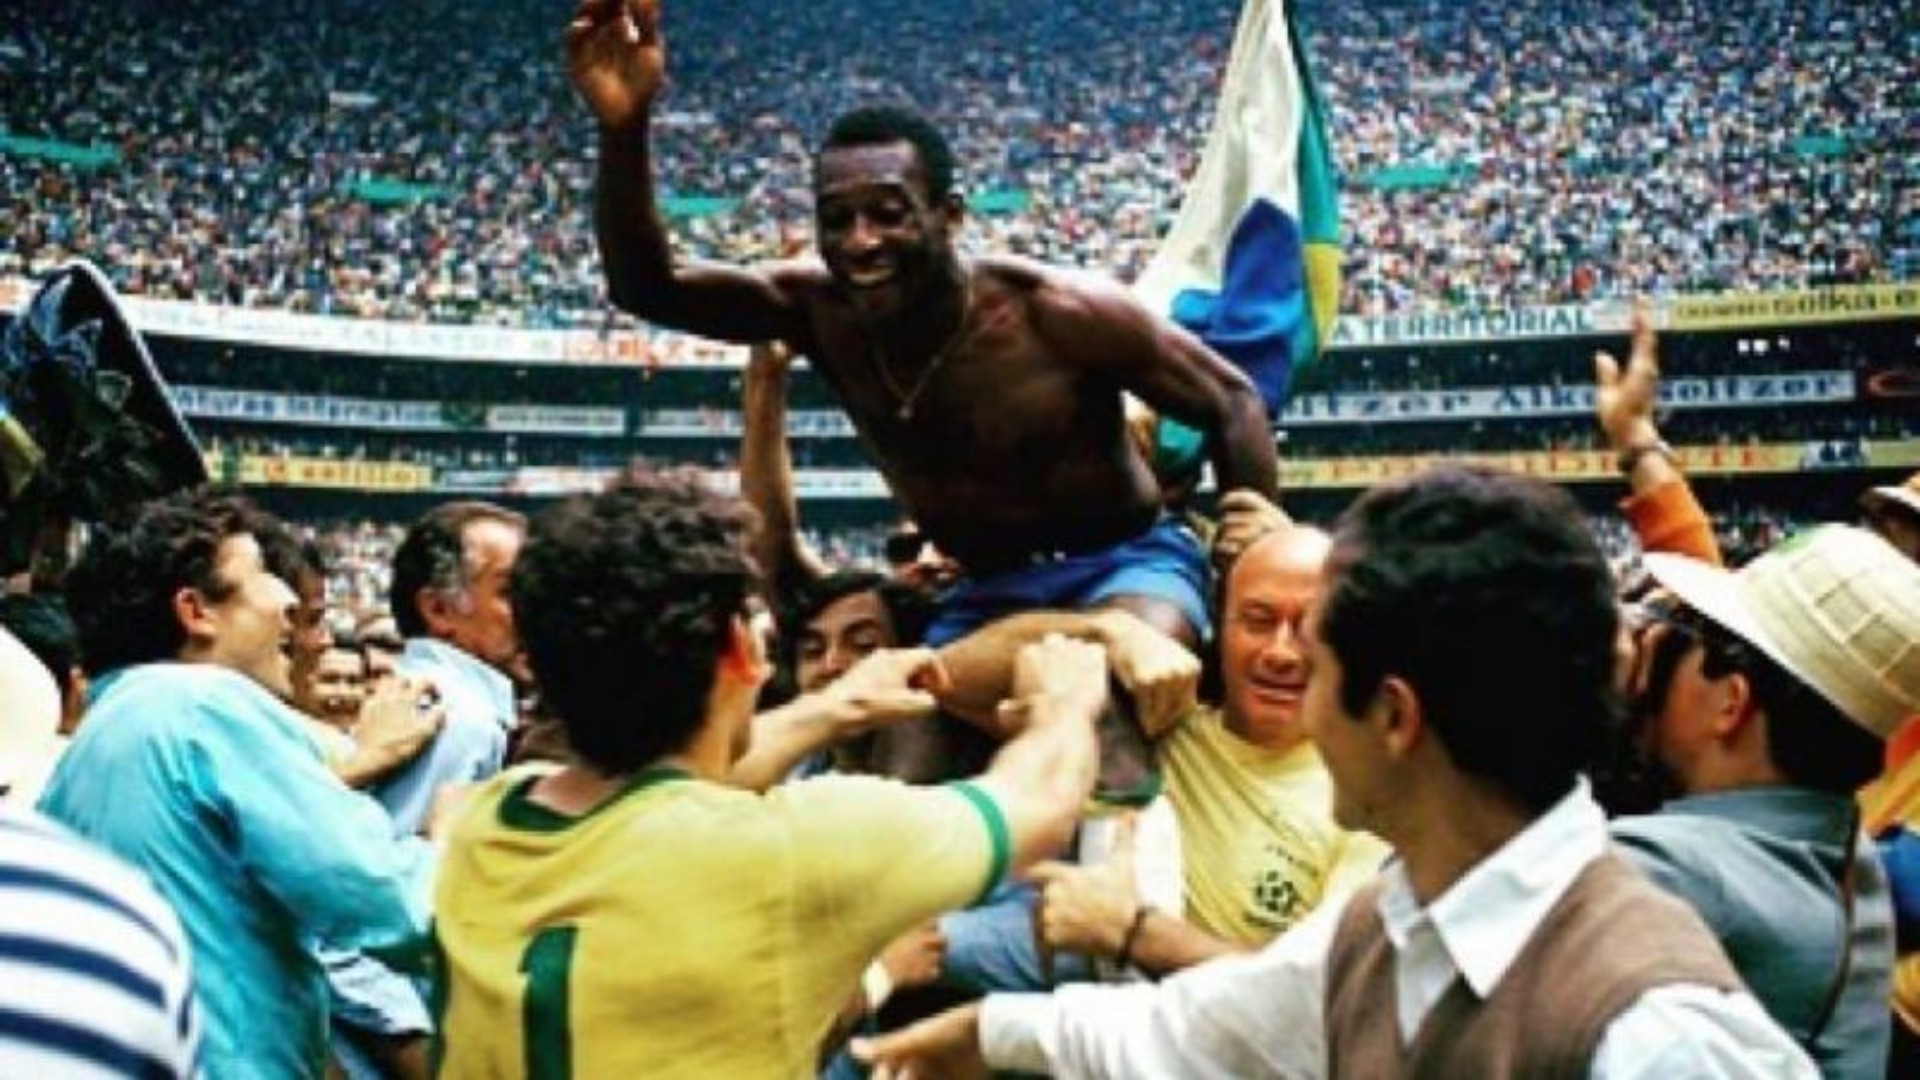 Foto: Reprodução/Twitter do Pelé